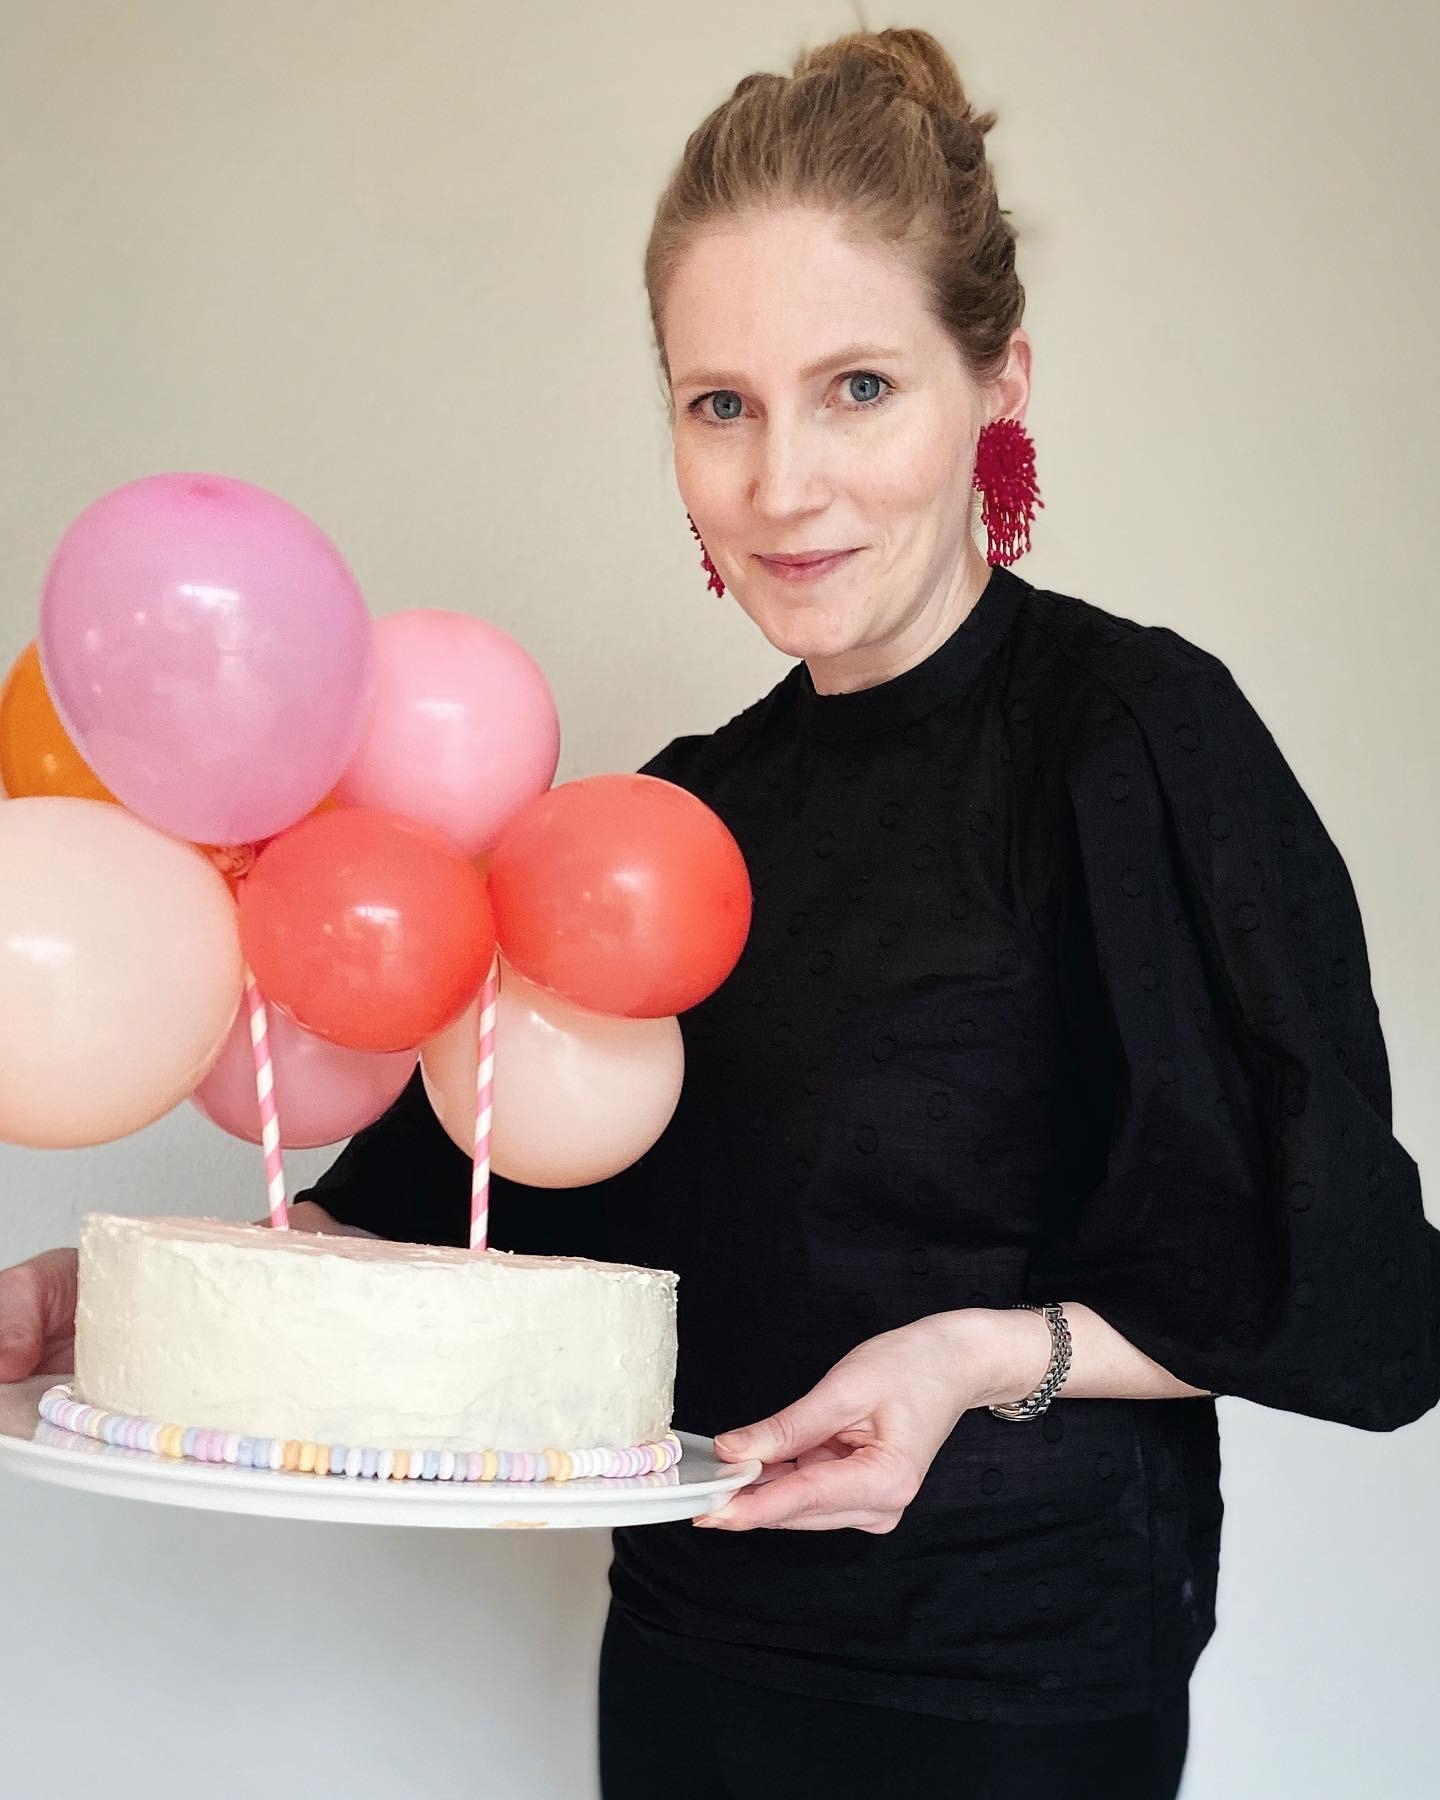 Surprise-Torte mit Luftballons für eine kleine Geburtstagsfee... 🧚🏼‍♀️ 
#kuchen #luftballons #party #cakes #cakelove